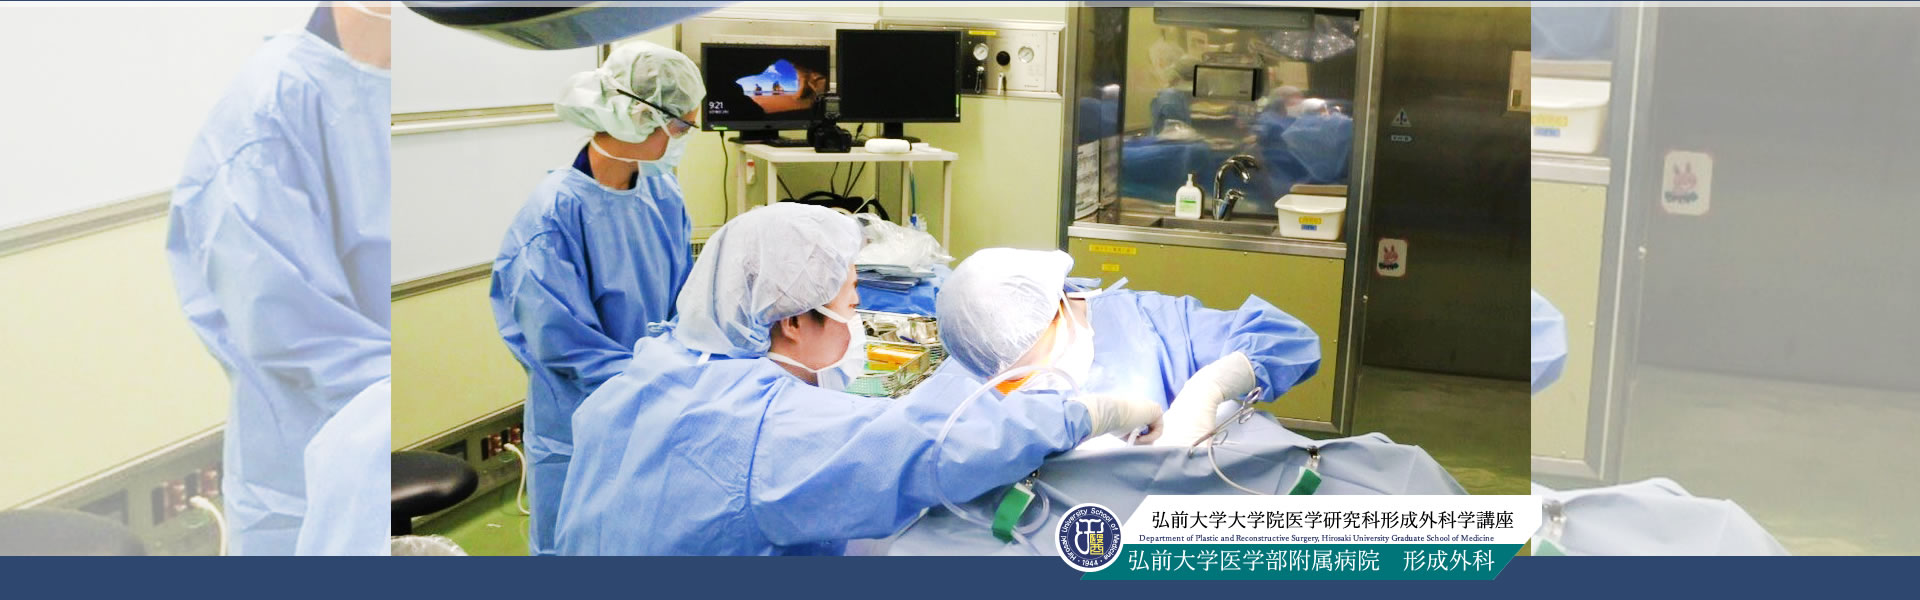 スライド4|弘前大学医学部 形成外科